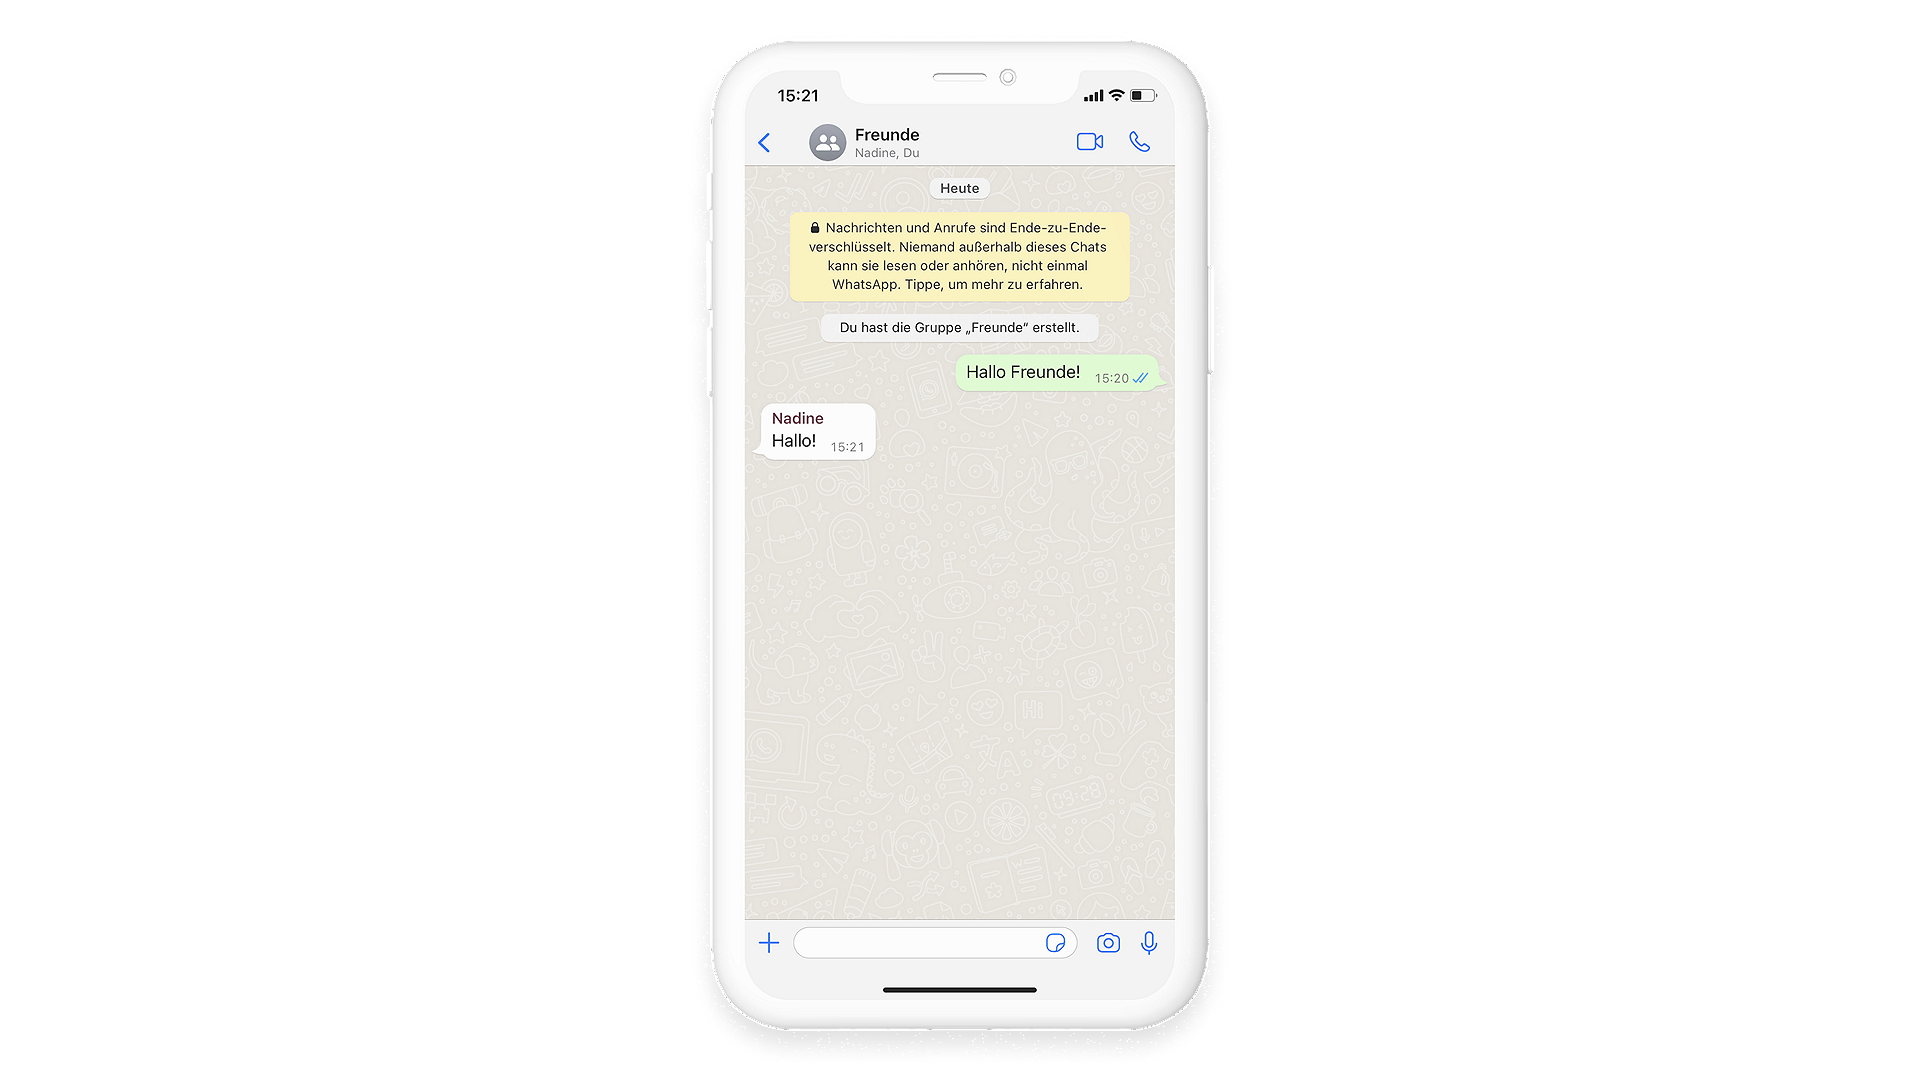 Kontakte können einer WhatsApp Gruppe durch das Öffnen des Chats hinzugefügt werden